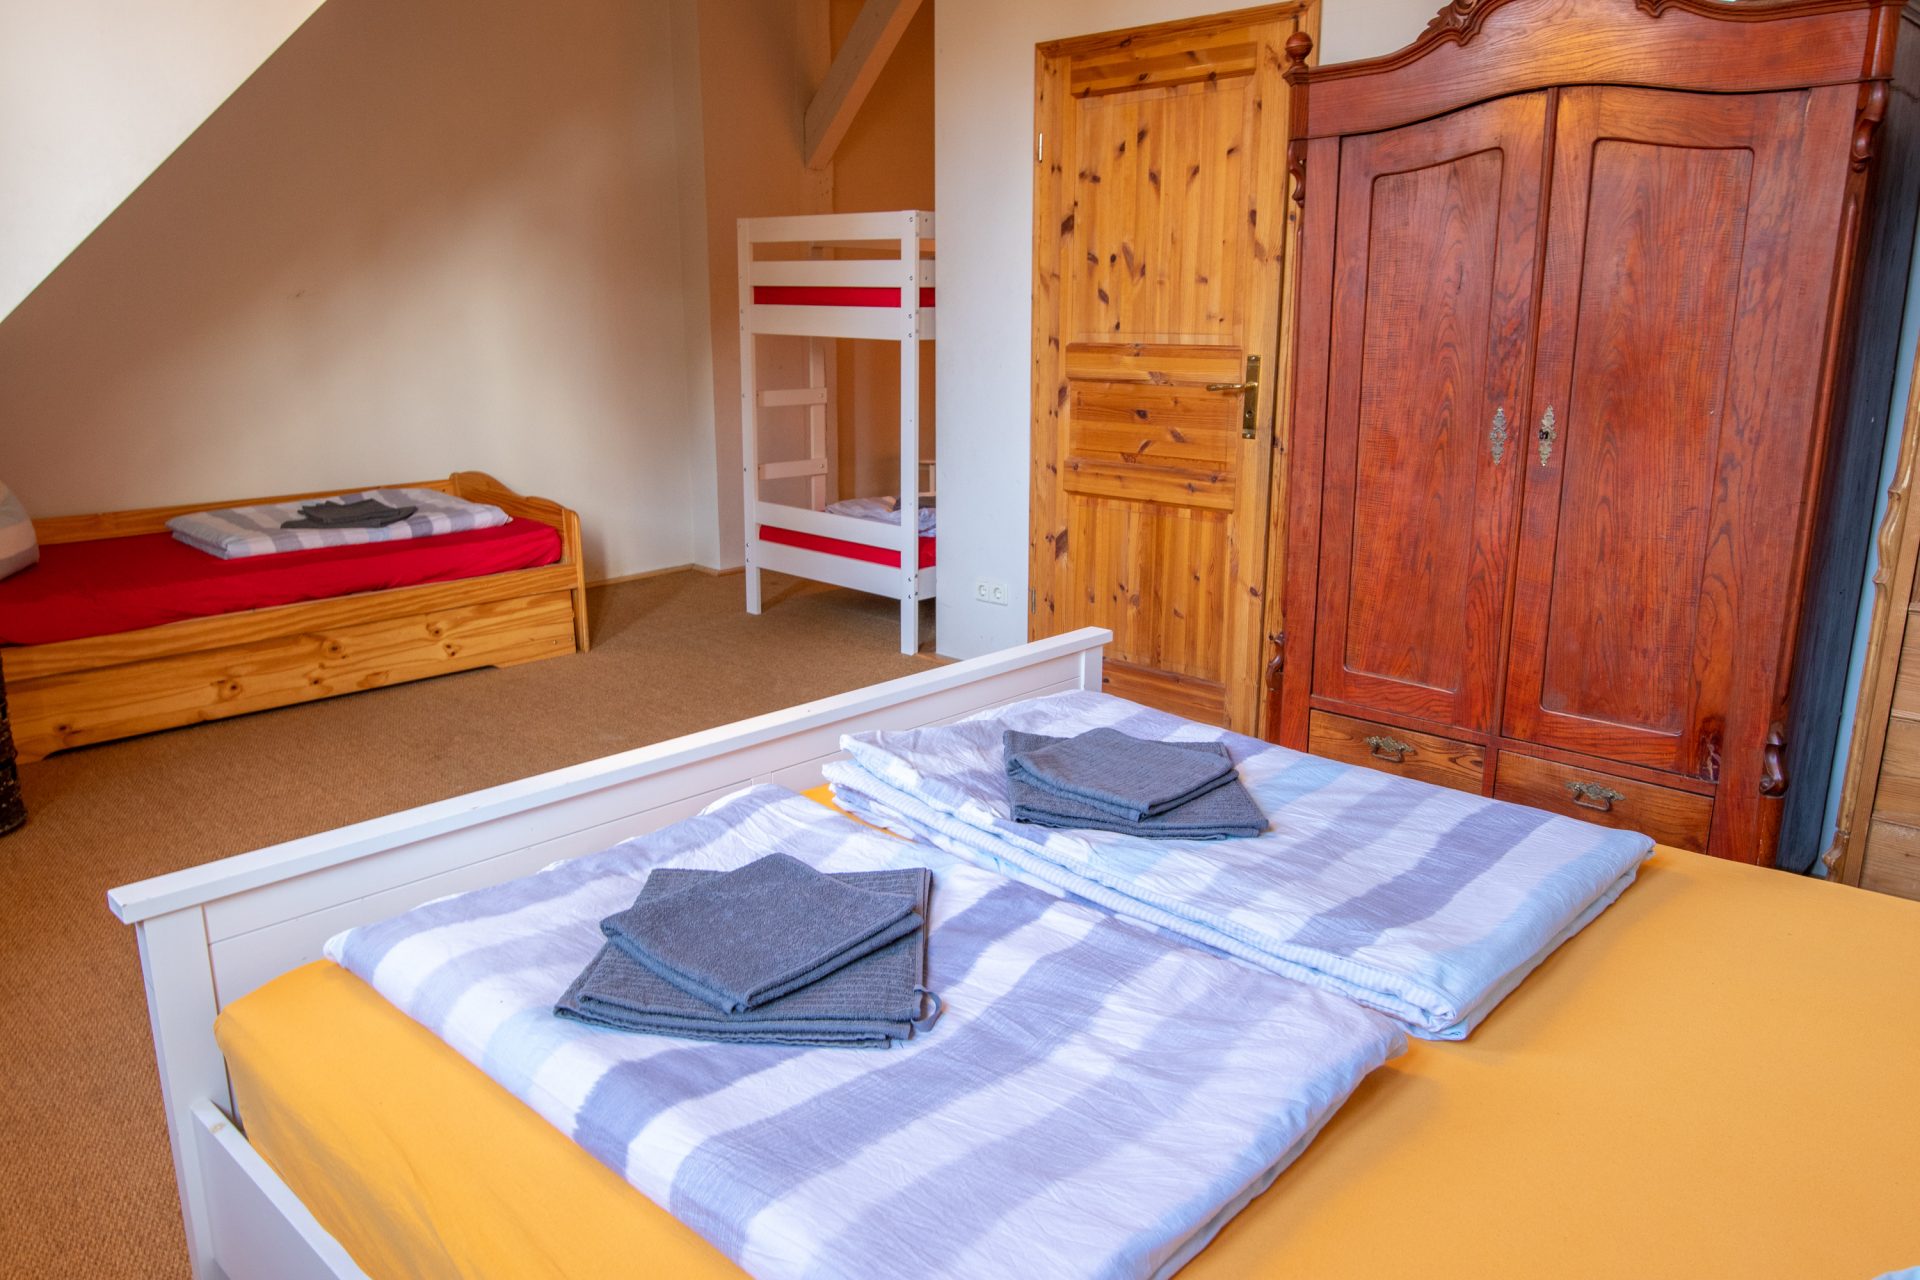 Schlafzimmer mit Doppelbett, Auszieh- und Etagenbett